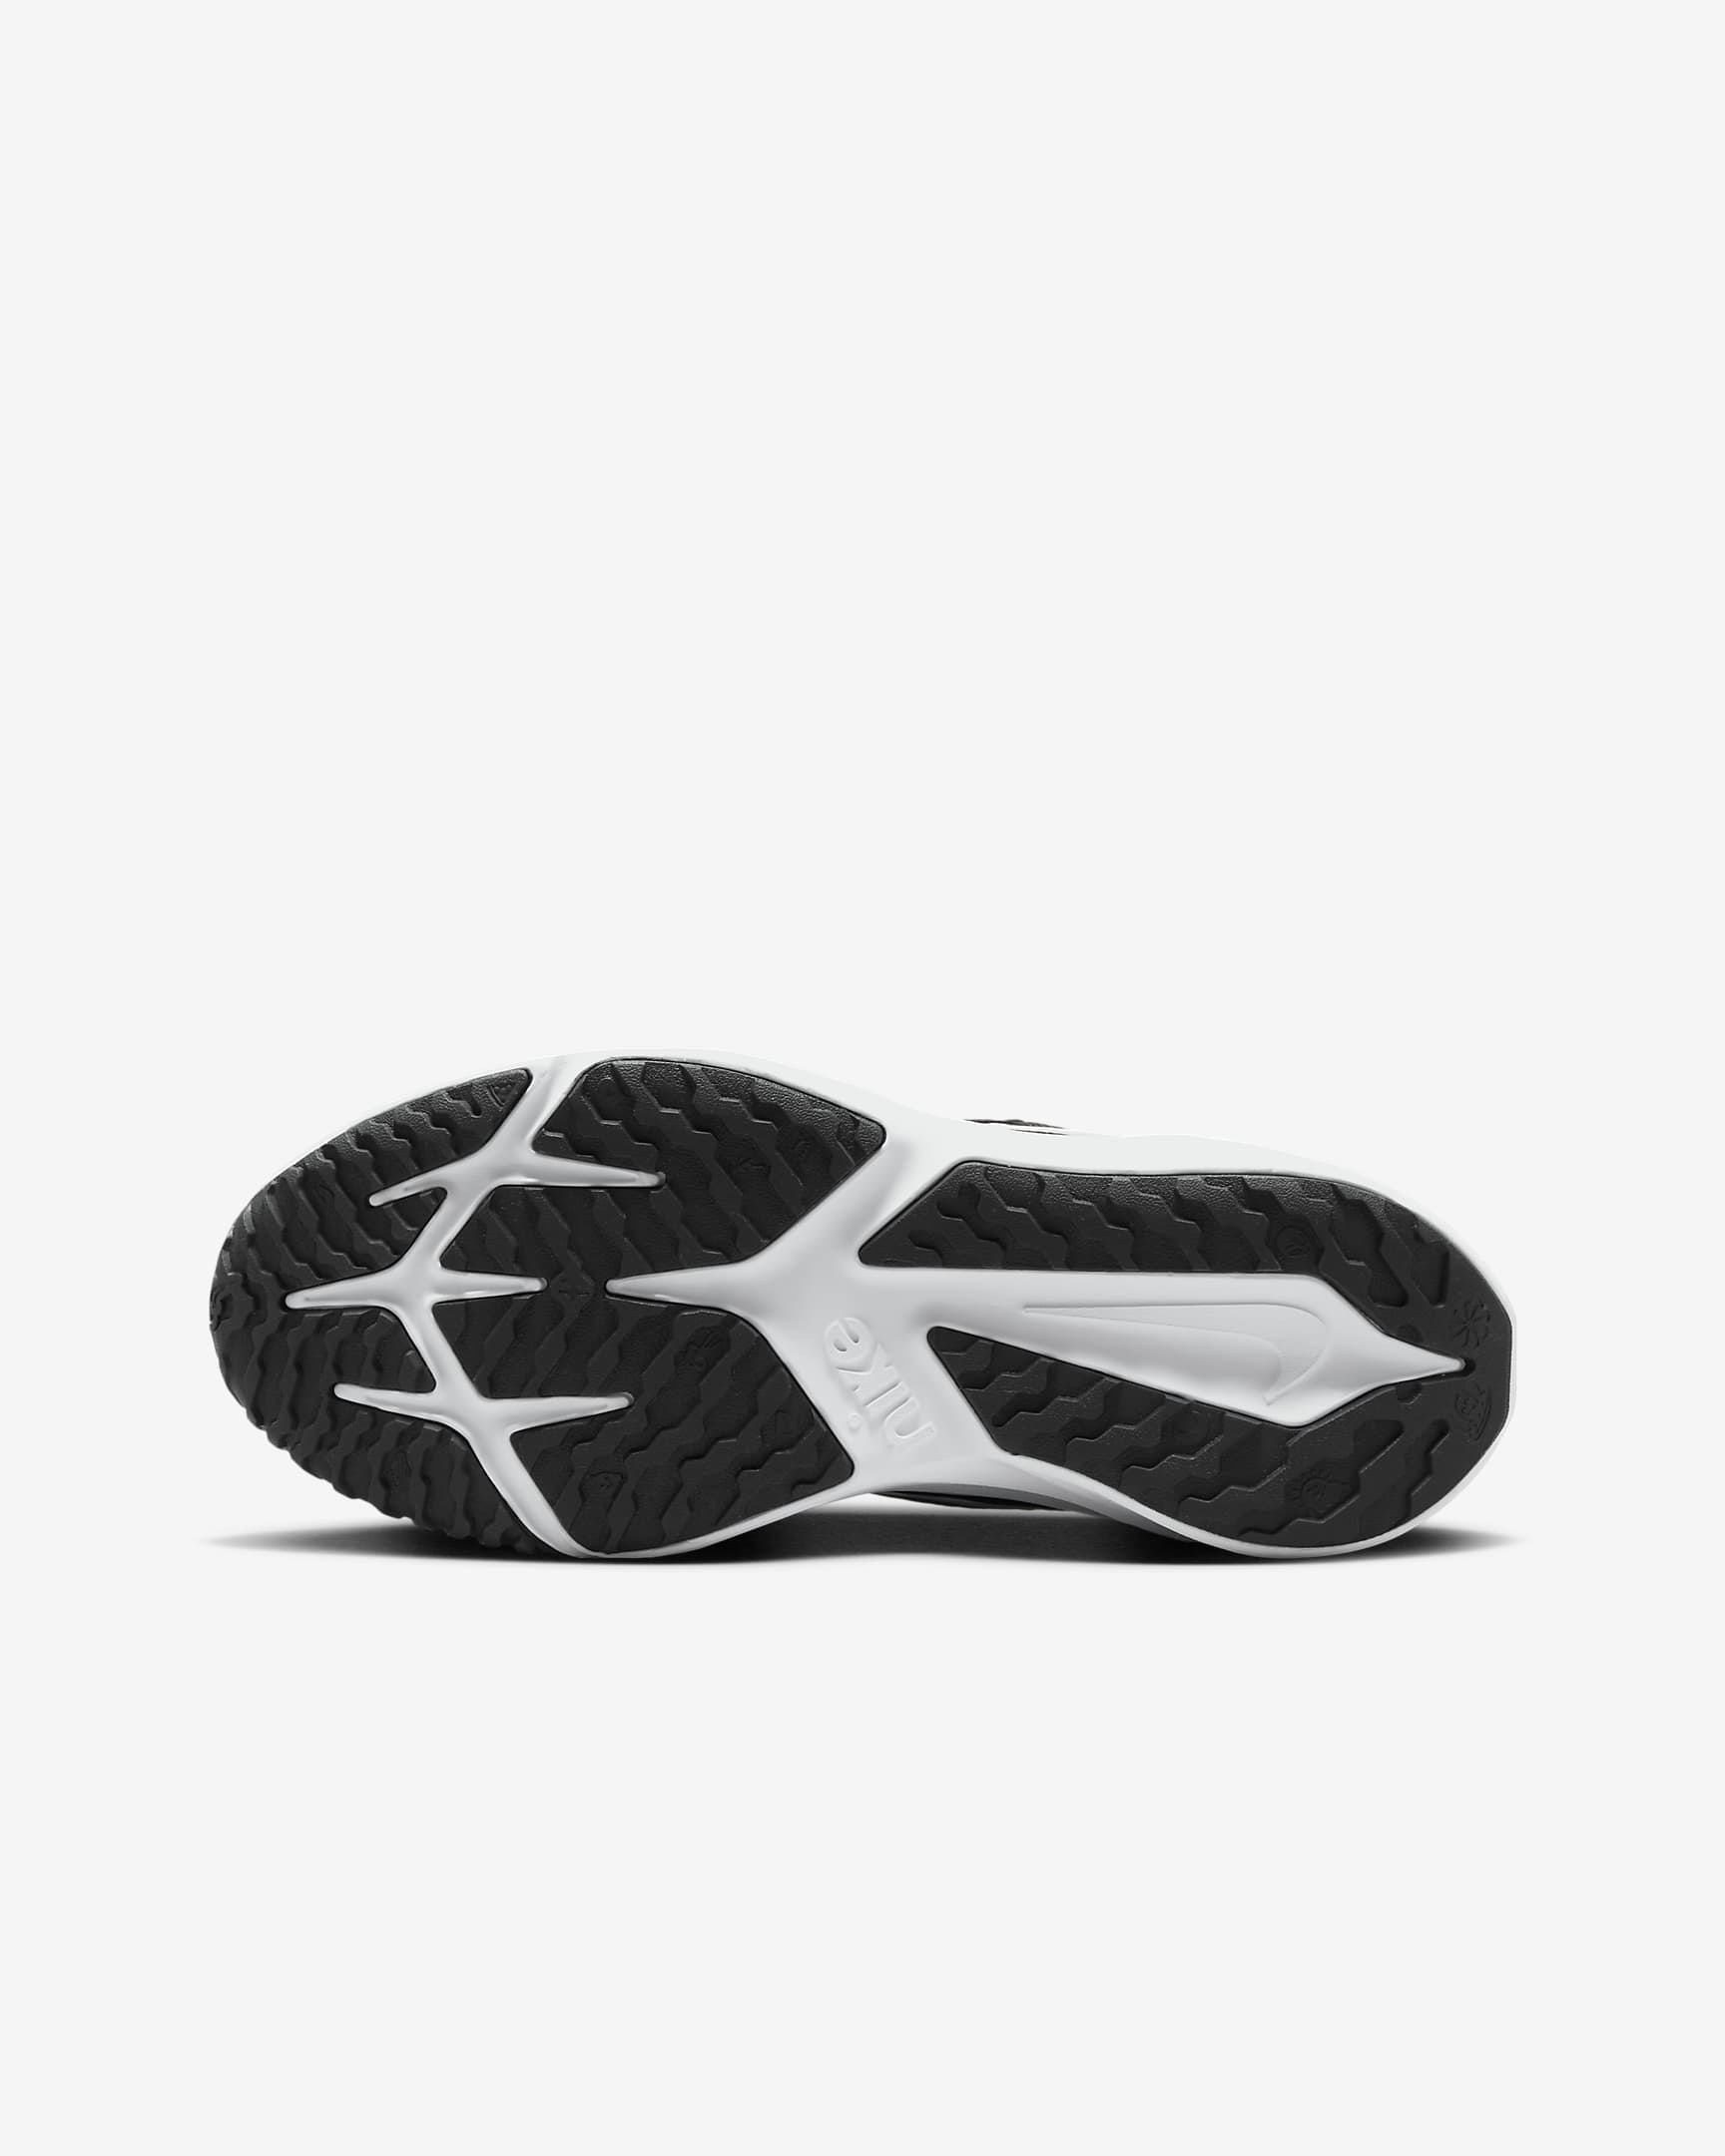 Sapatilhas de running para estrada Nike Star Runner 4 Júnior - Preto/Anthracite/Branco